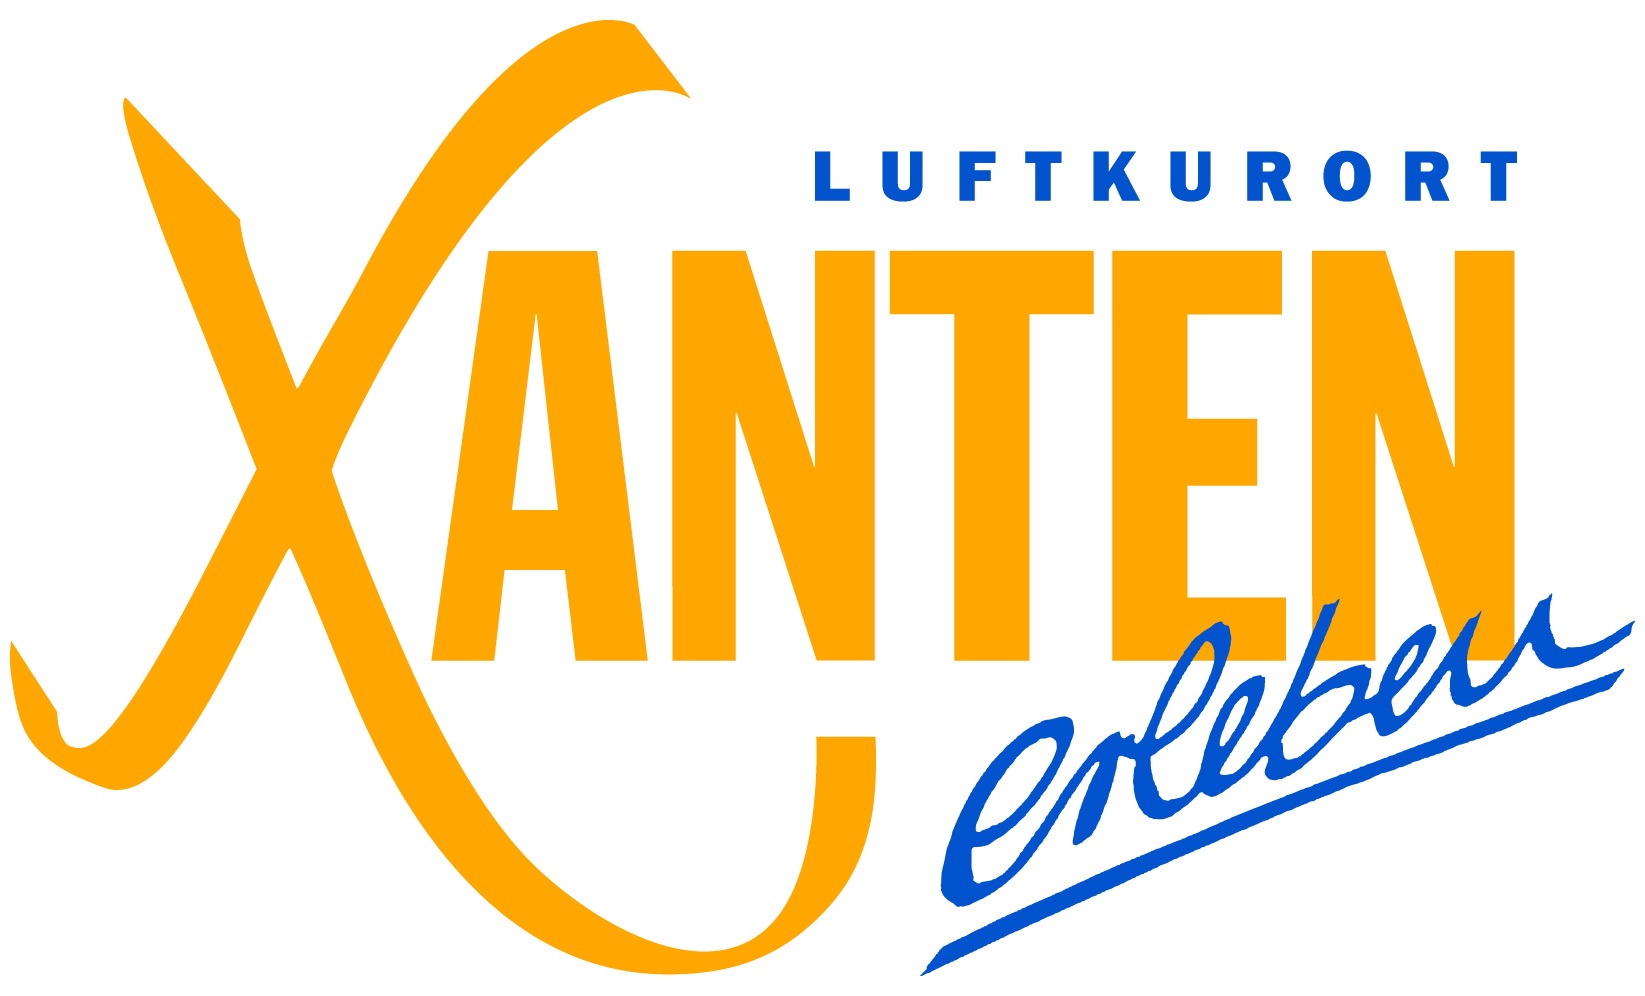 Logo Stadt Xanten